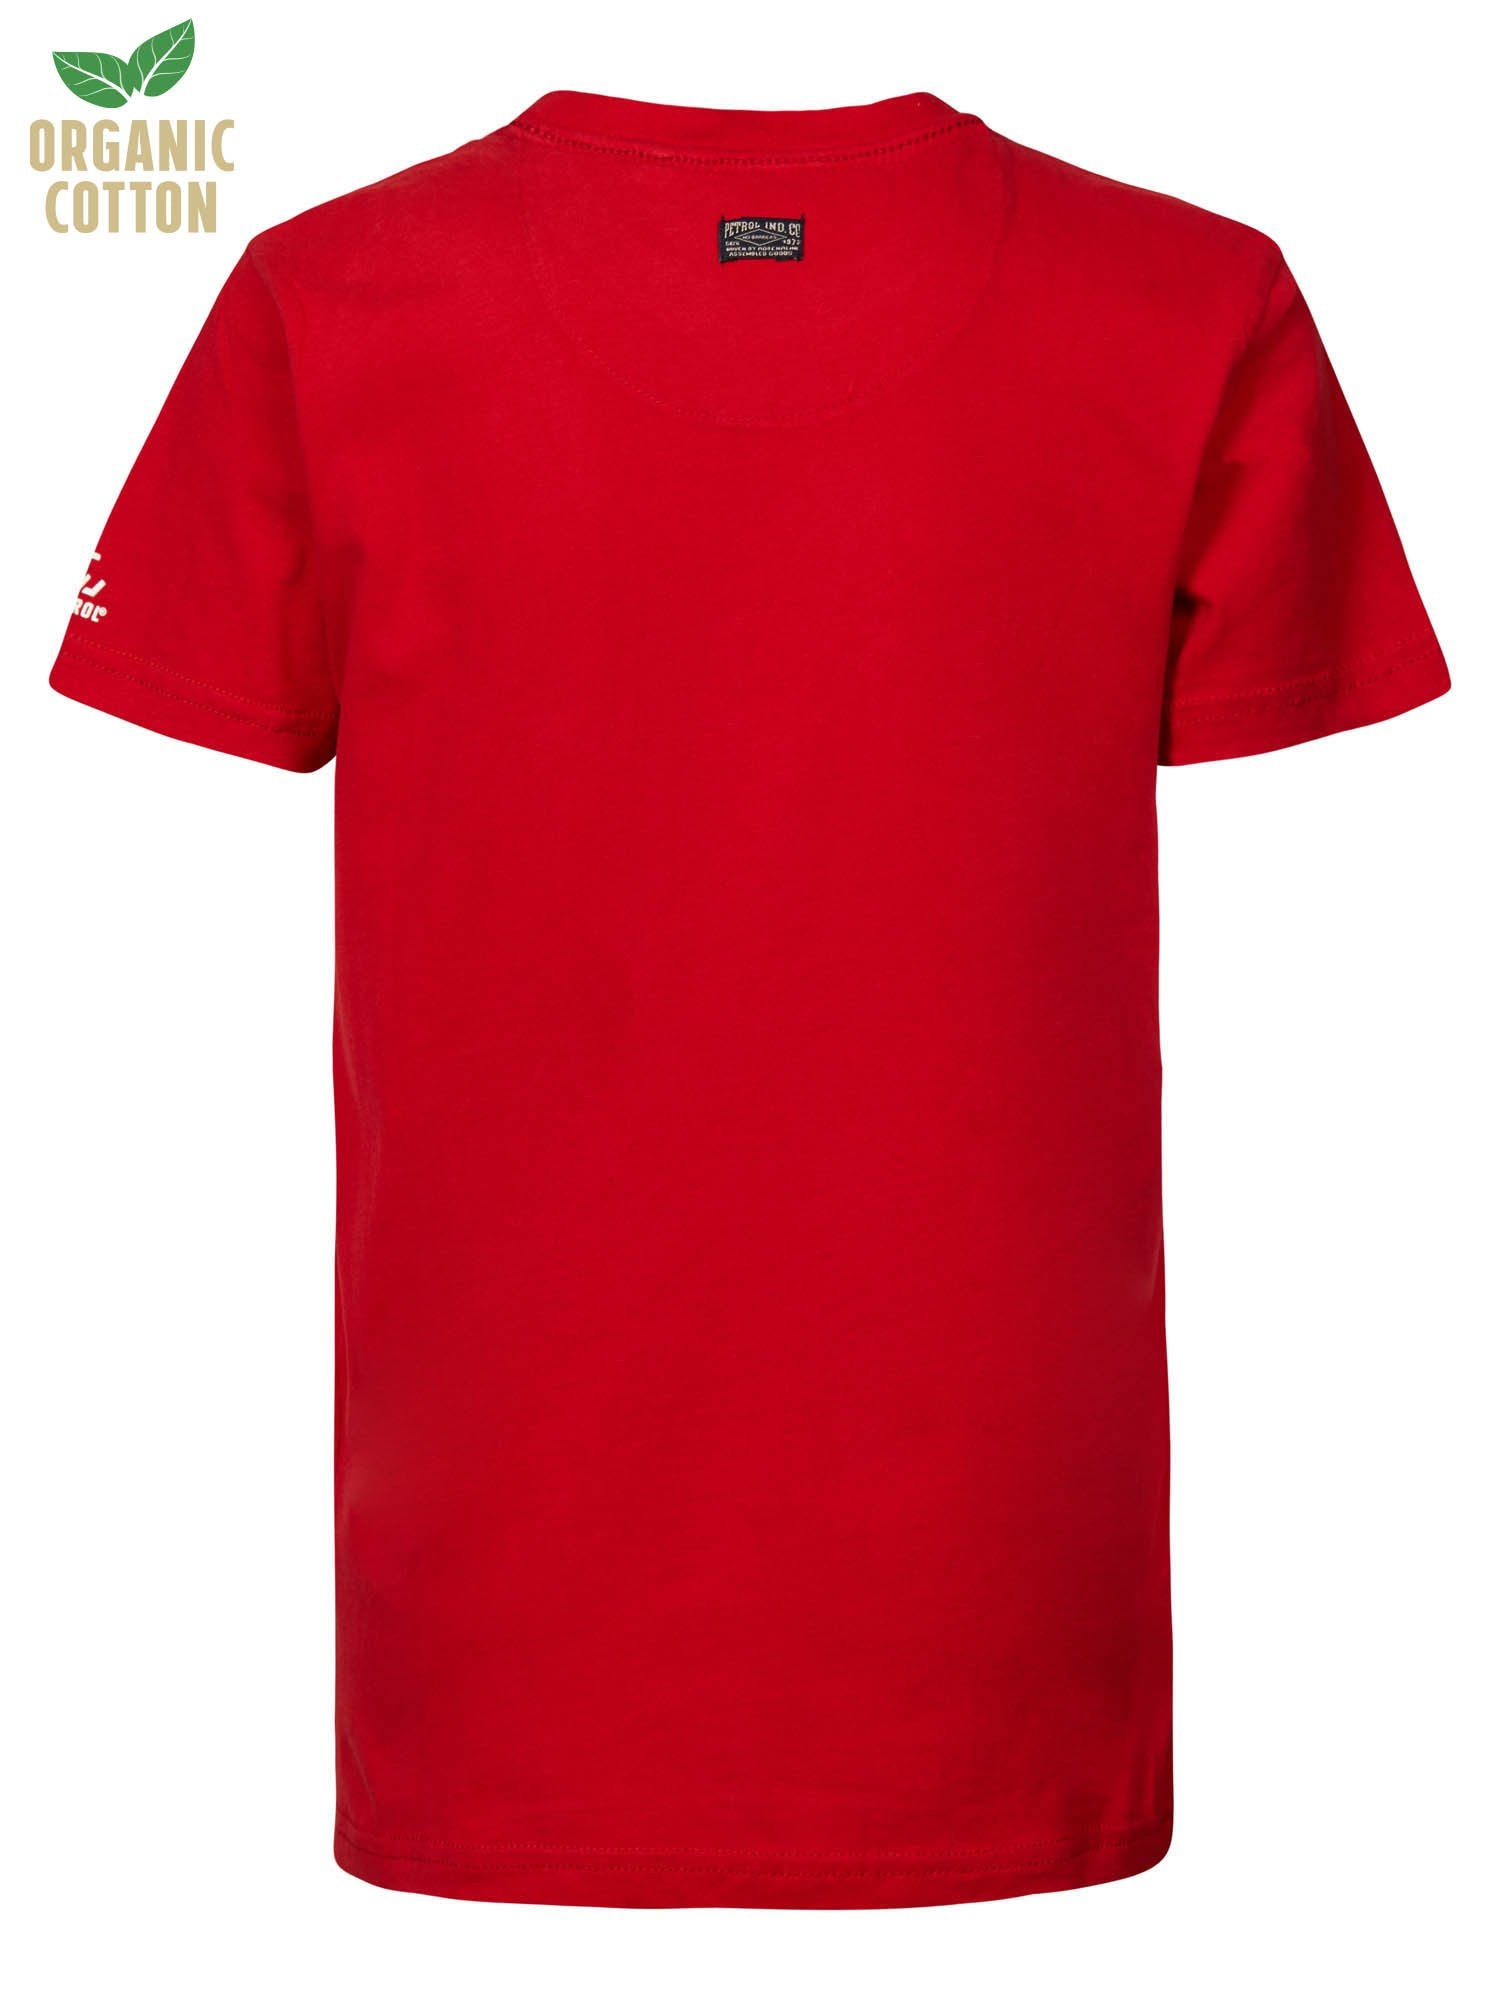 Jongens T-shirt No Barriers van Petrol in de kleur Urban Red in maat 164.